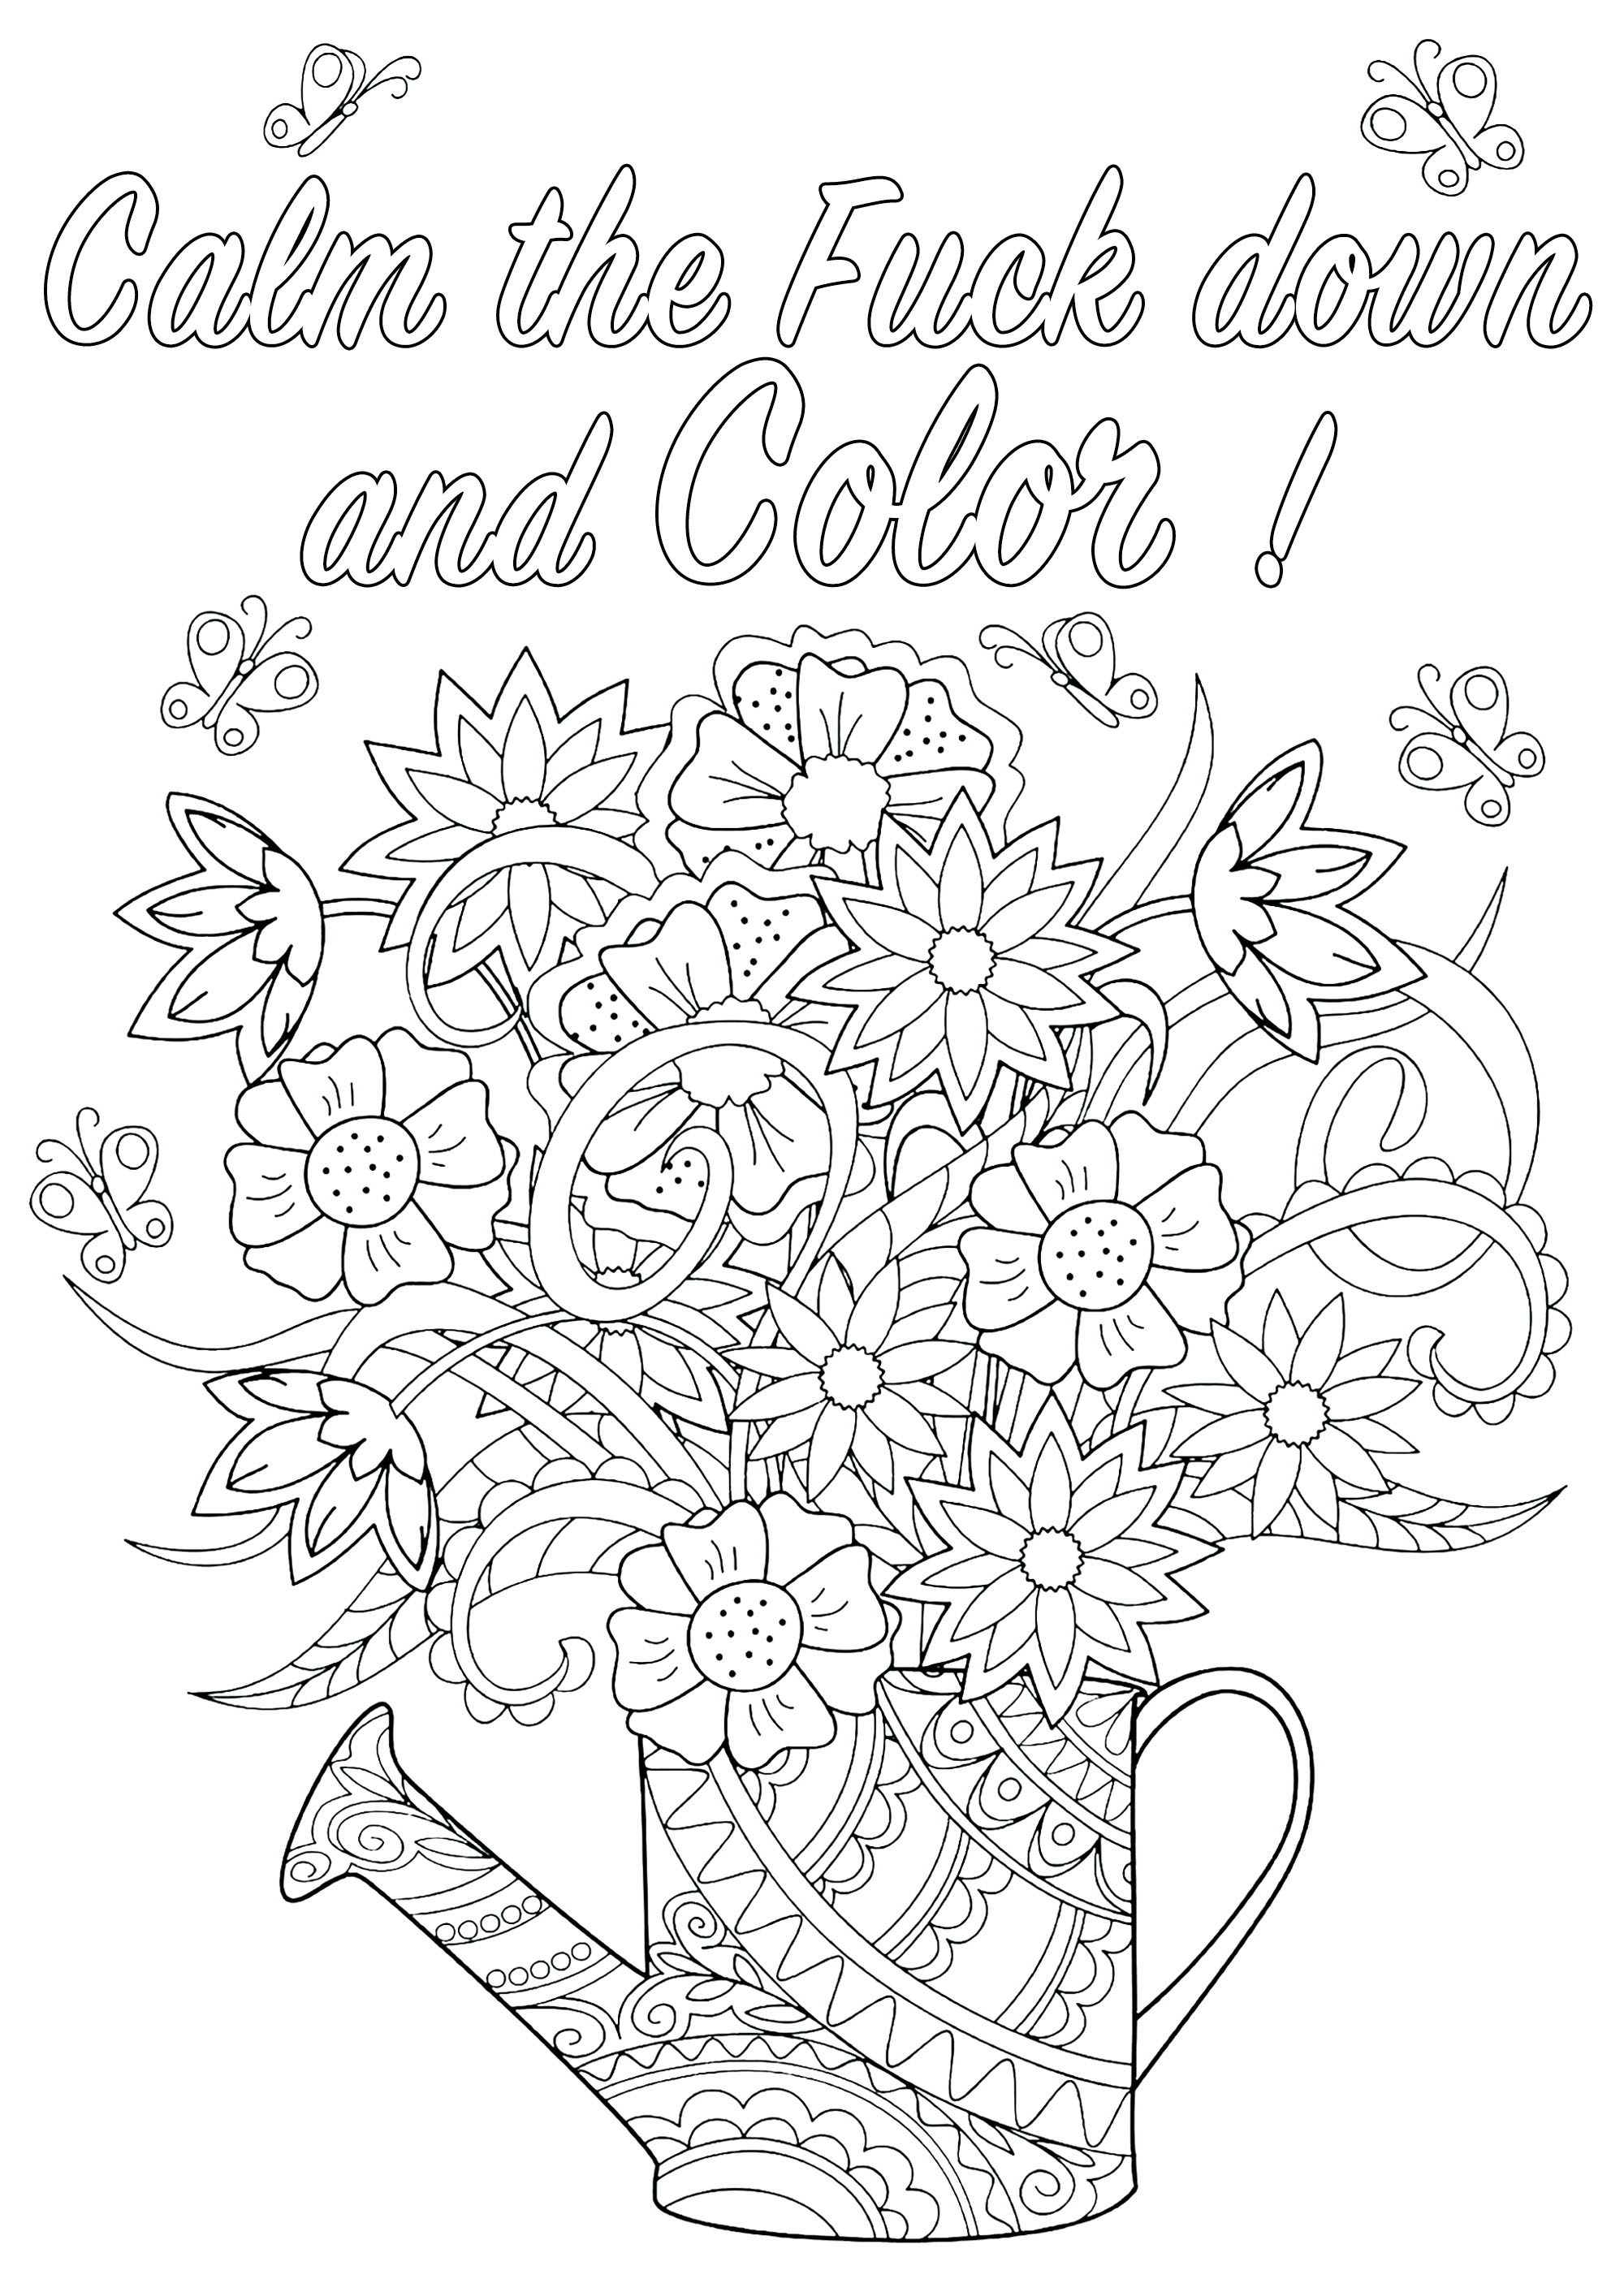 Calmati e colora: pagina da colorare di parolacce con fiori in un annaffiatoio